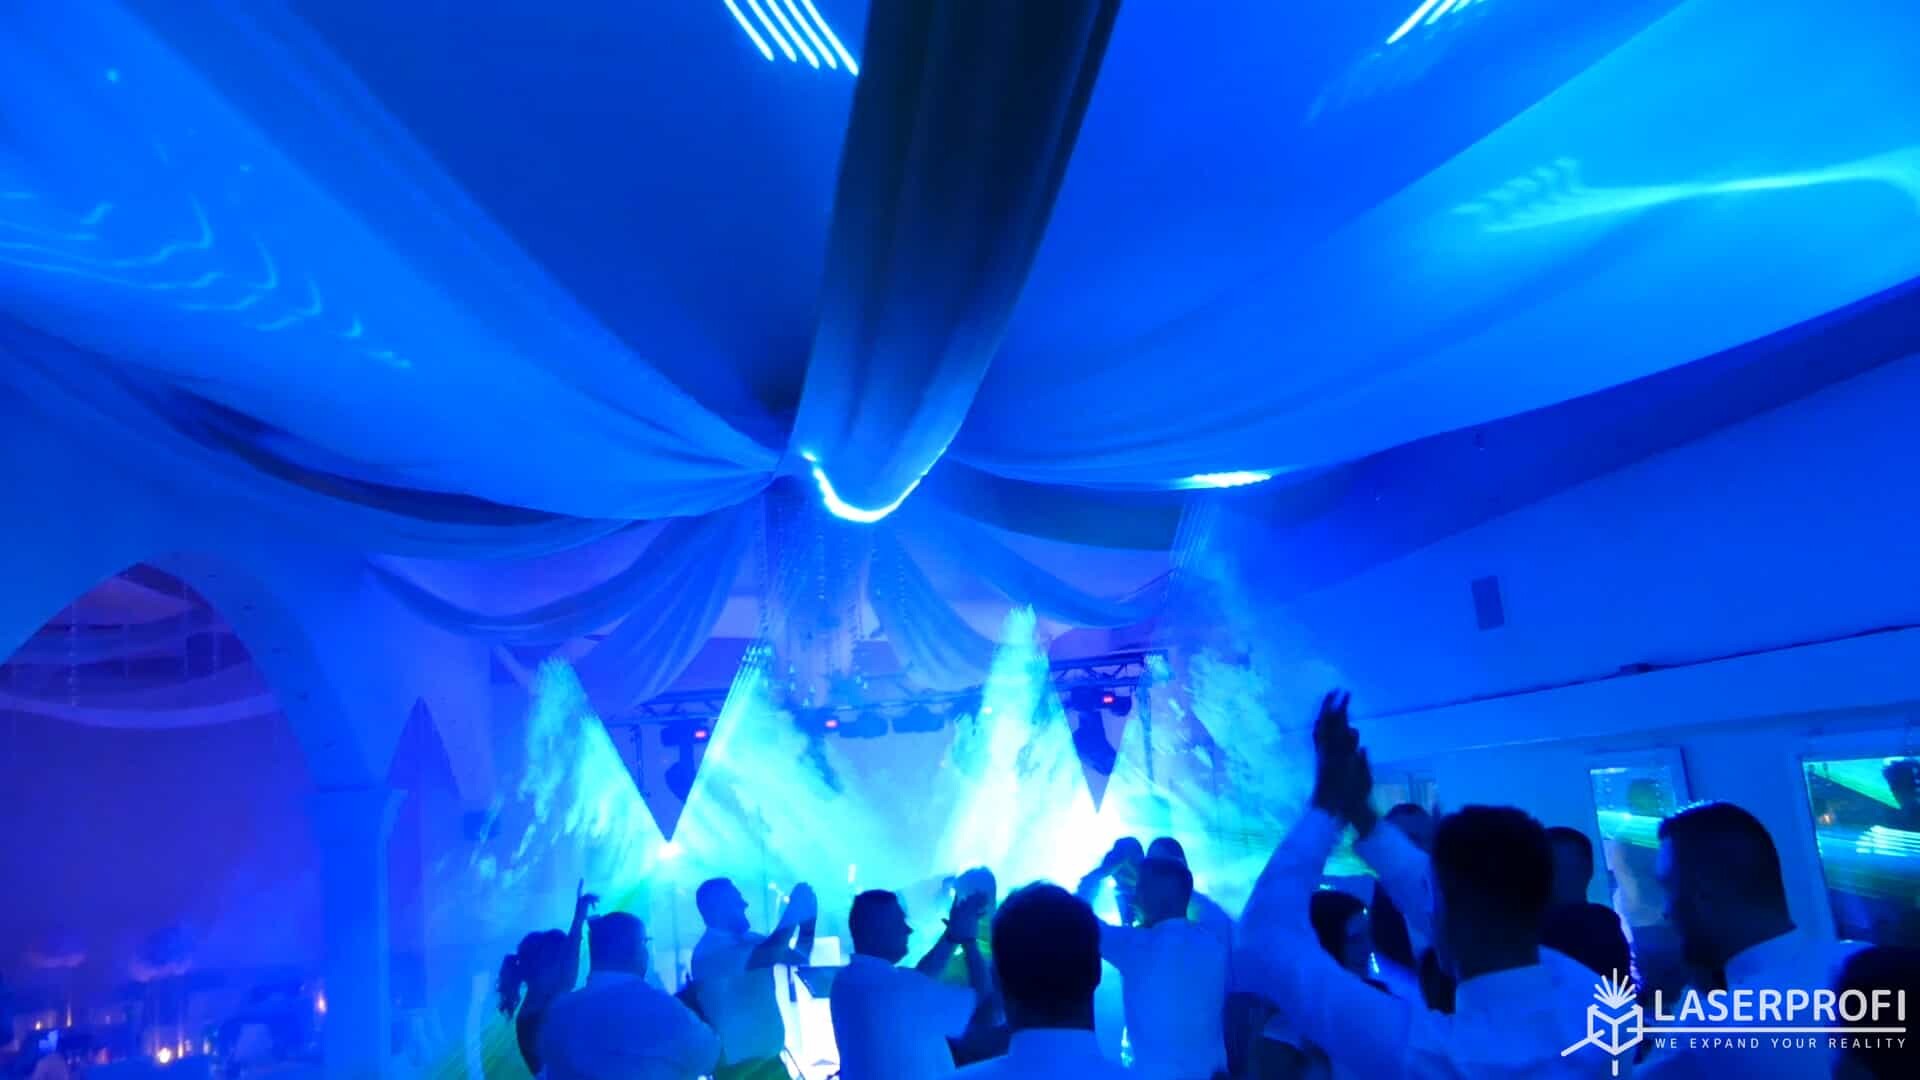 Pokaz laserowy przestrzenny na weselu niebieski tunel laserowy